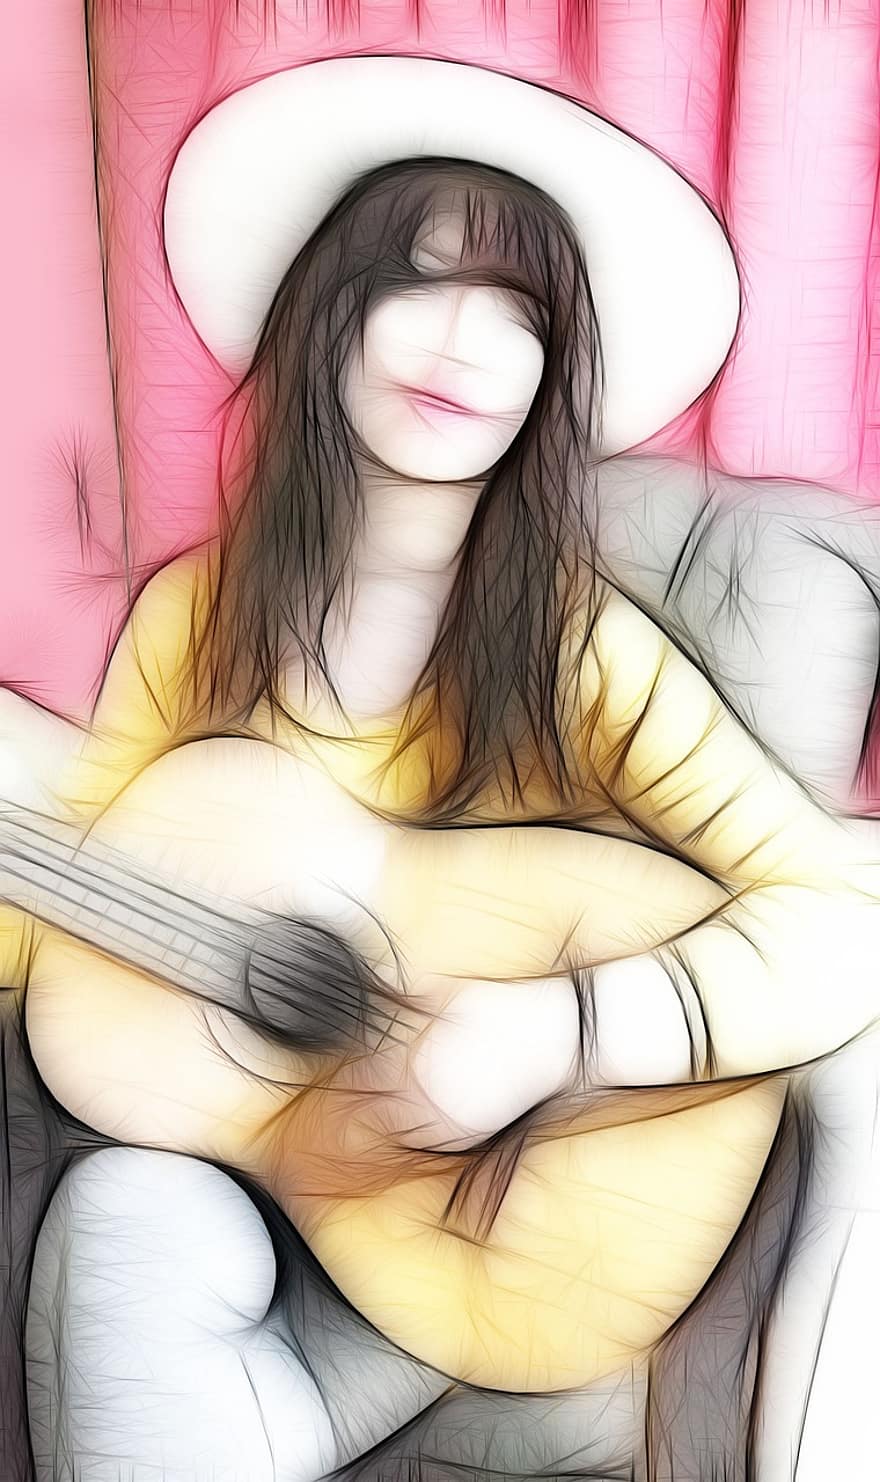 غيتار ، فتاة ، موسيقى ، أداة ، يعزف الجيتار ، آلة موسيقية ، النساء ، موسيقي او عازف ، قبعة